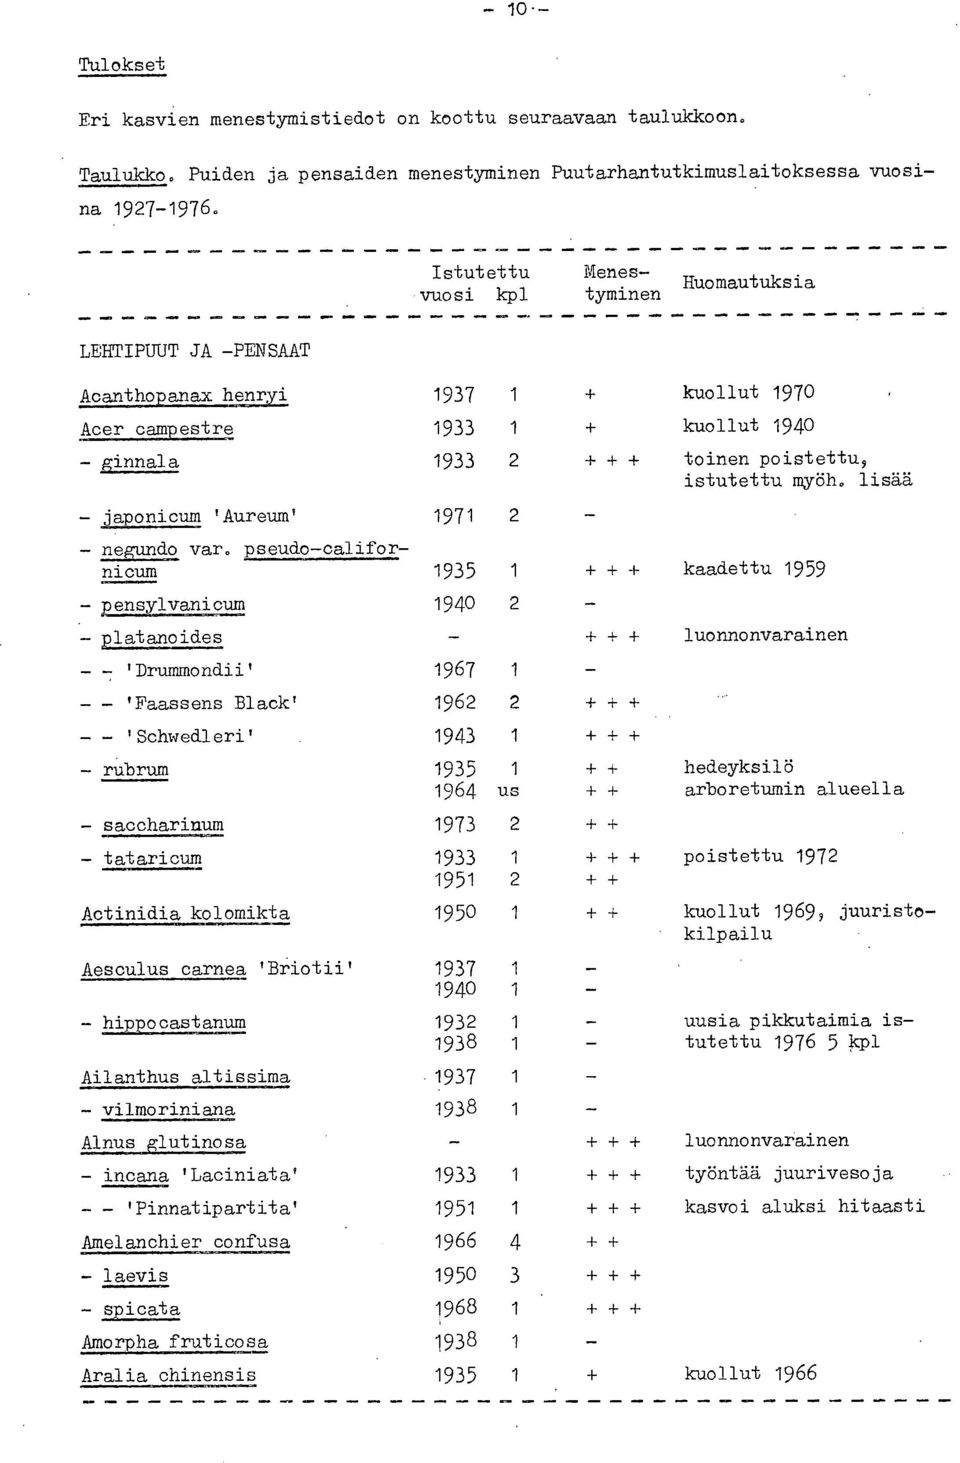 pseudo-californicum 1935 1 + + + - pensylvanicum 1940 2 _ - platanoides - + + + - -: 'Drummondii' 1967 1 _ 'Faassens Black' 1962 2 + + + - - 'Schwedleri' 1943 1 + + + - rubrum 19365 4 1 + + us + + -